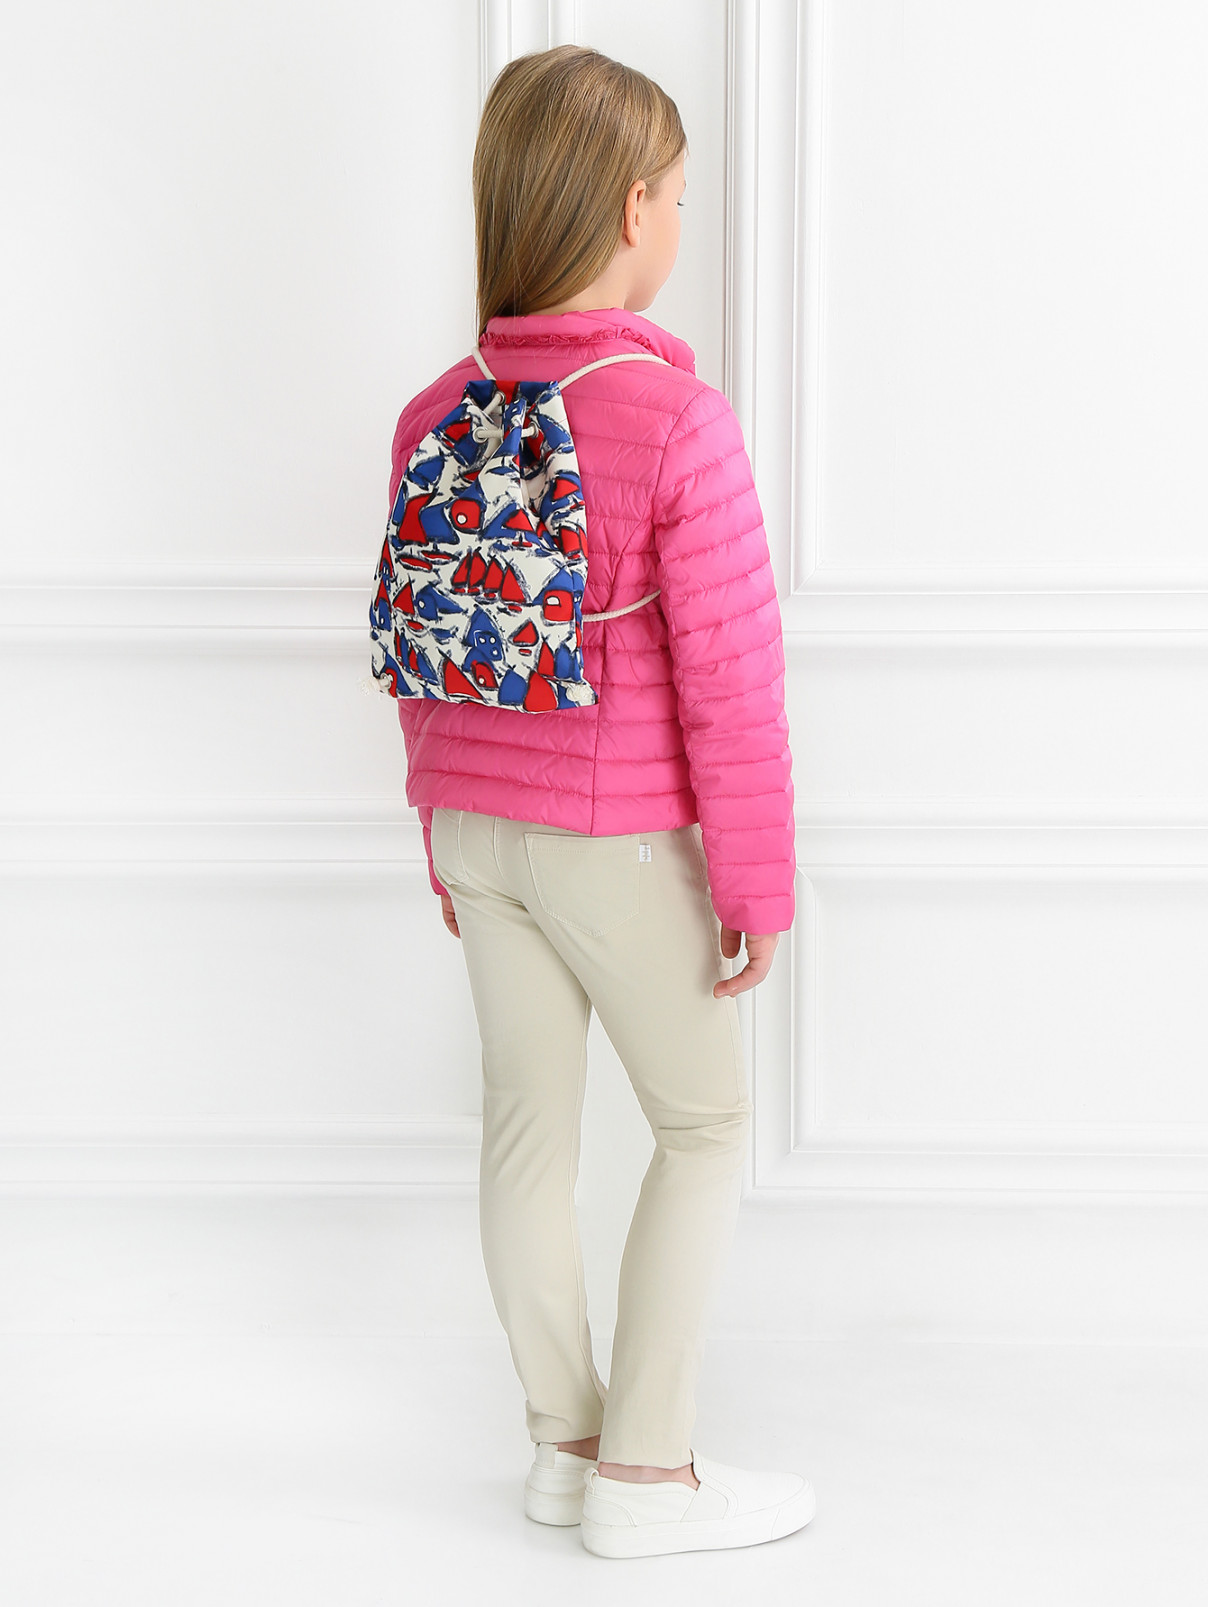 Текстильный рюкзак с узором MiMiSol  –  Модель Общий вид  – Цвет:  Мультиколор